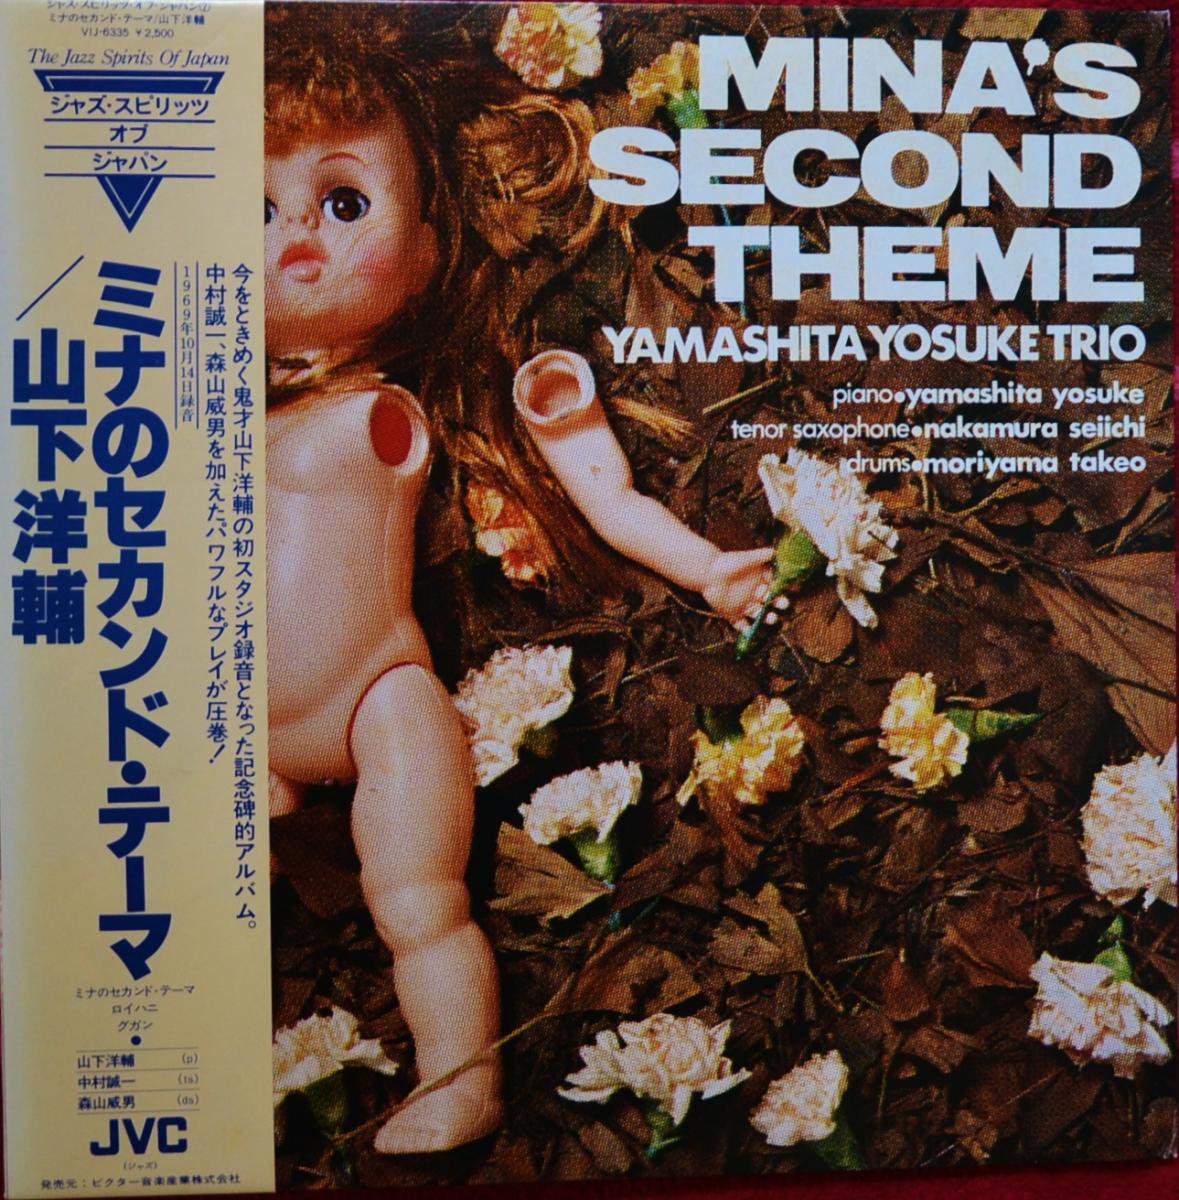 山下洋輔 YAMASHITA YOSUKE TRIO / ミナのセカンド・テーマ MINA'S SECOND THEME (LP)